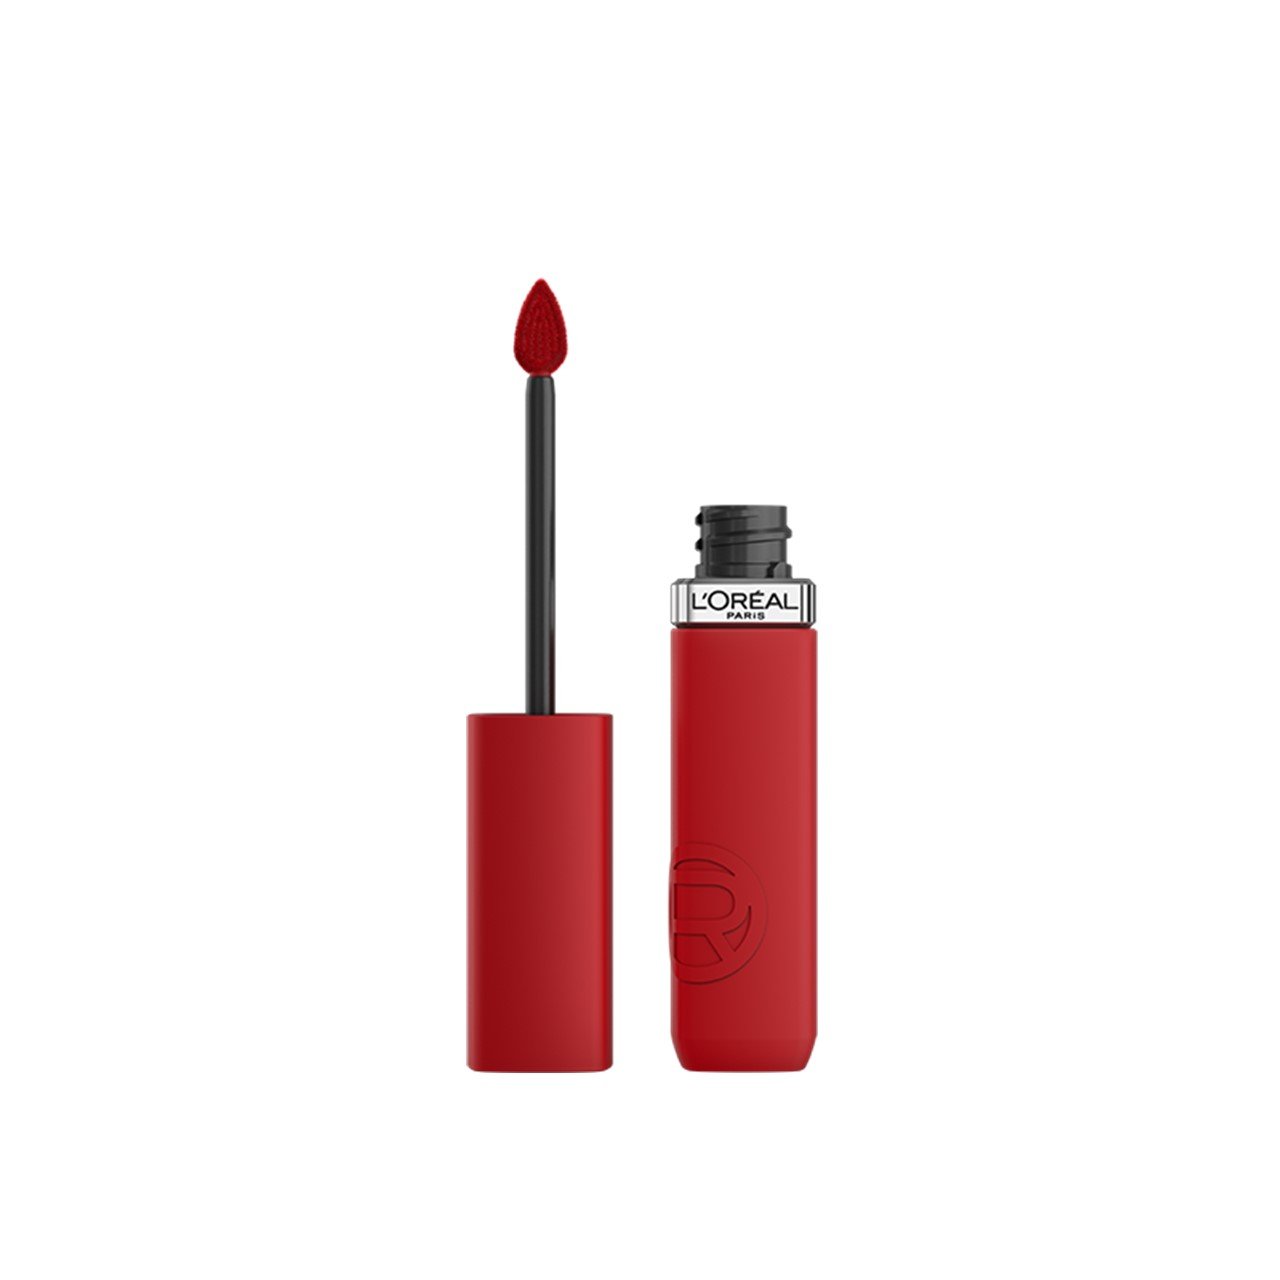 L'Oréal Paris Infallible Matte Resistance Liquid Lipstick 425 Afterwork Drink(s) 5ml